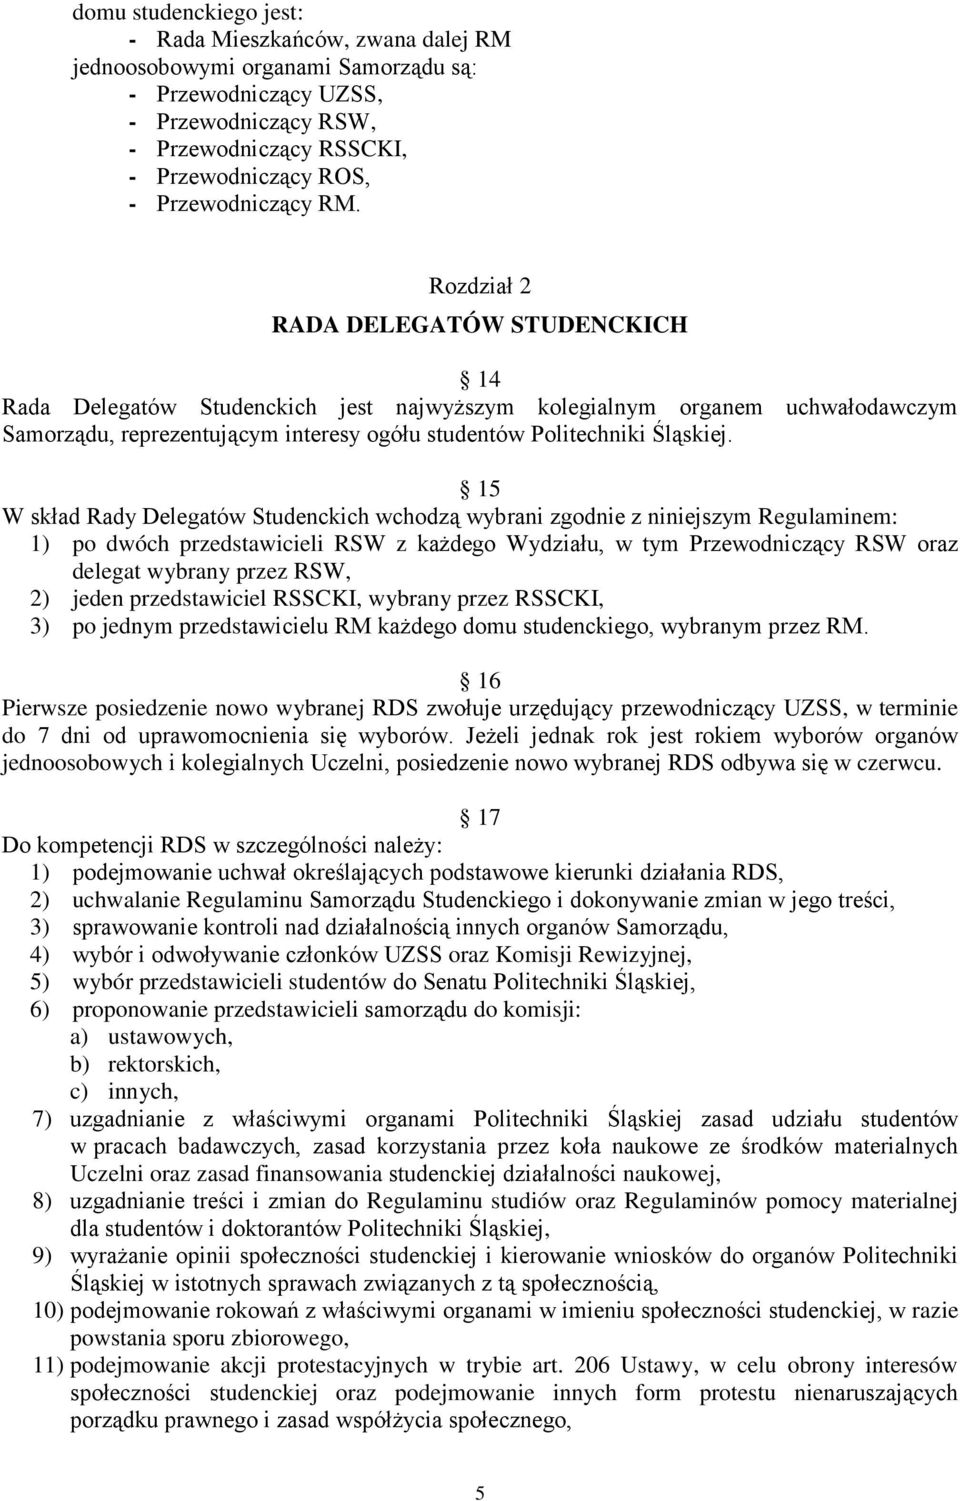 Rozdział 2 RADA DELEGATÓW STUDENCKICH 14 Rada Delegatów Studenckich jest najwyższym kolegialnym organem uchwałodawczym Samorządu, reprezentującym interesy ogółu studentów Politechniki Śląskiej.